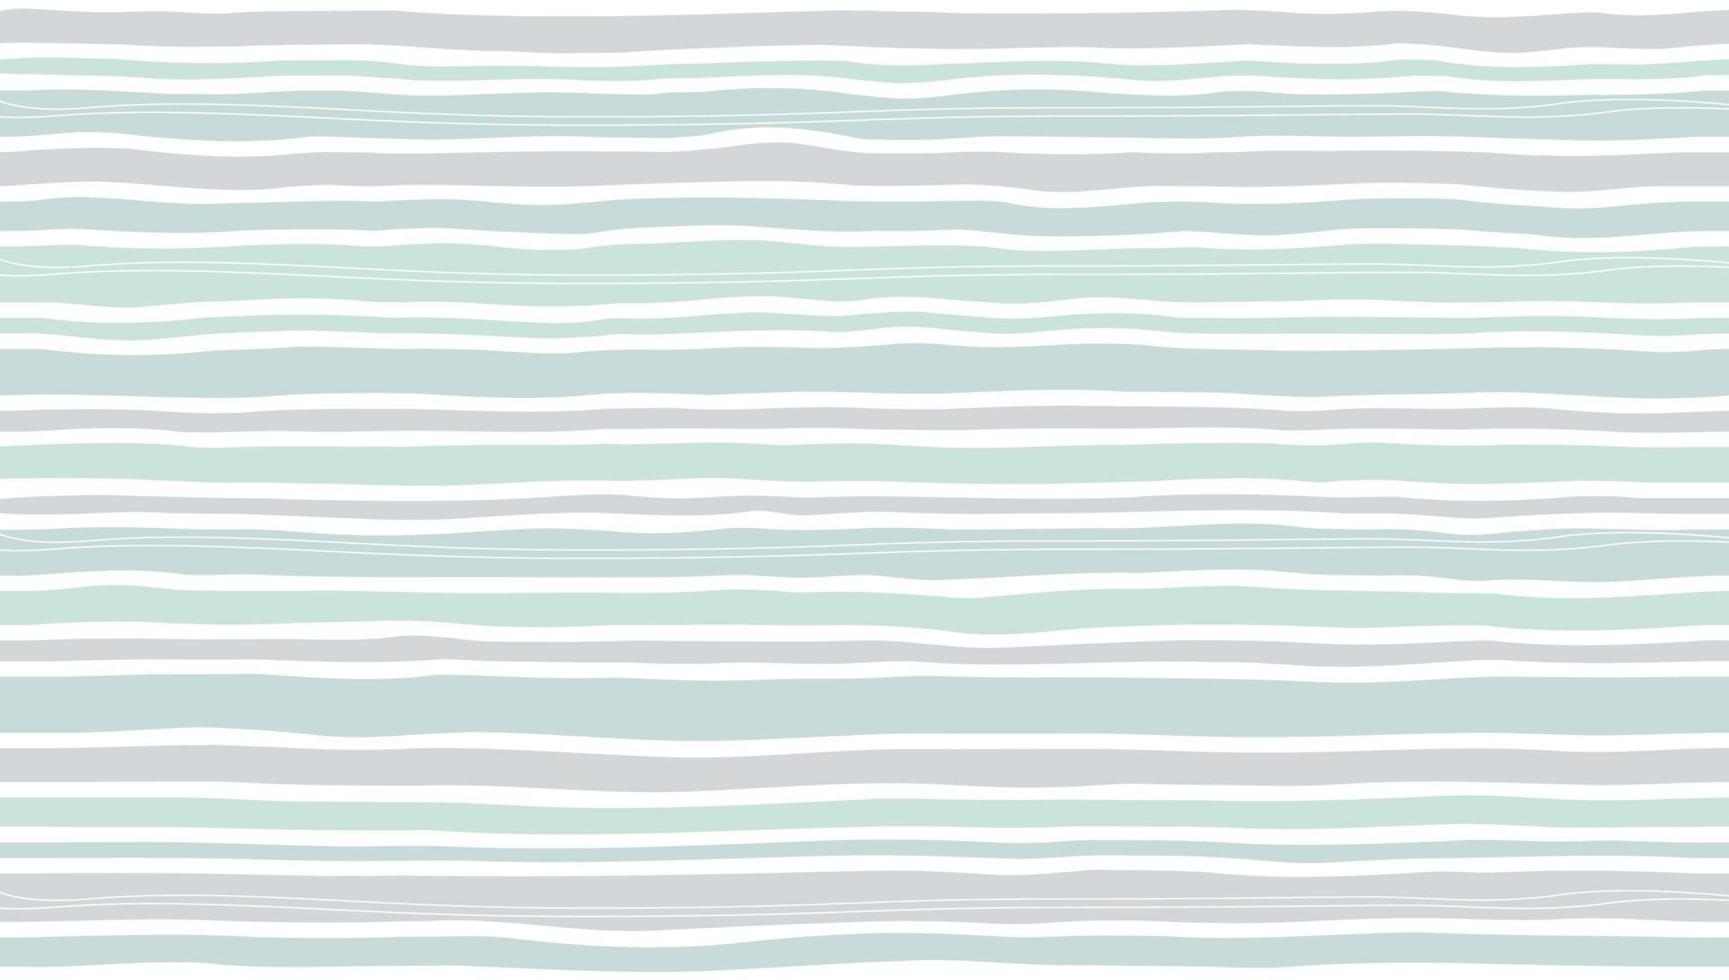 Summer background design of wave lines pattern pastel color vector illustration